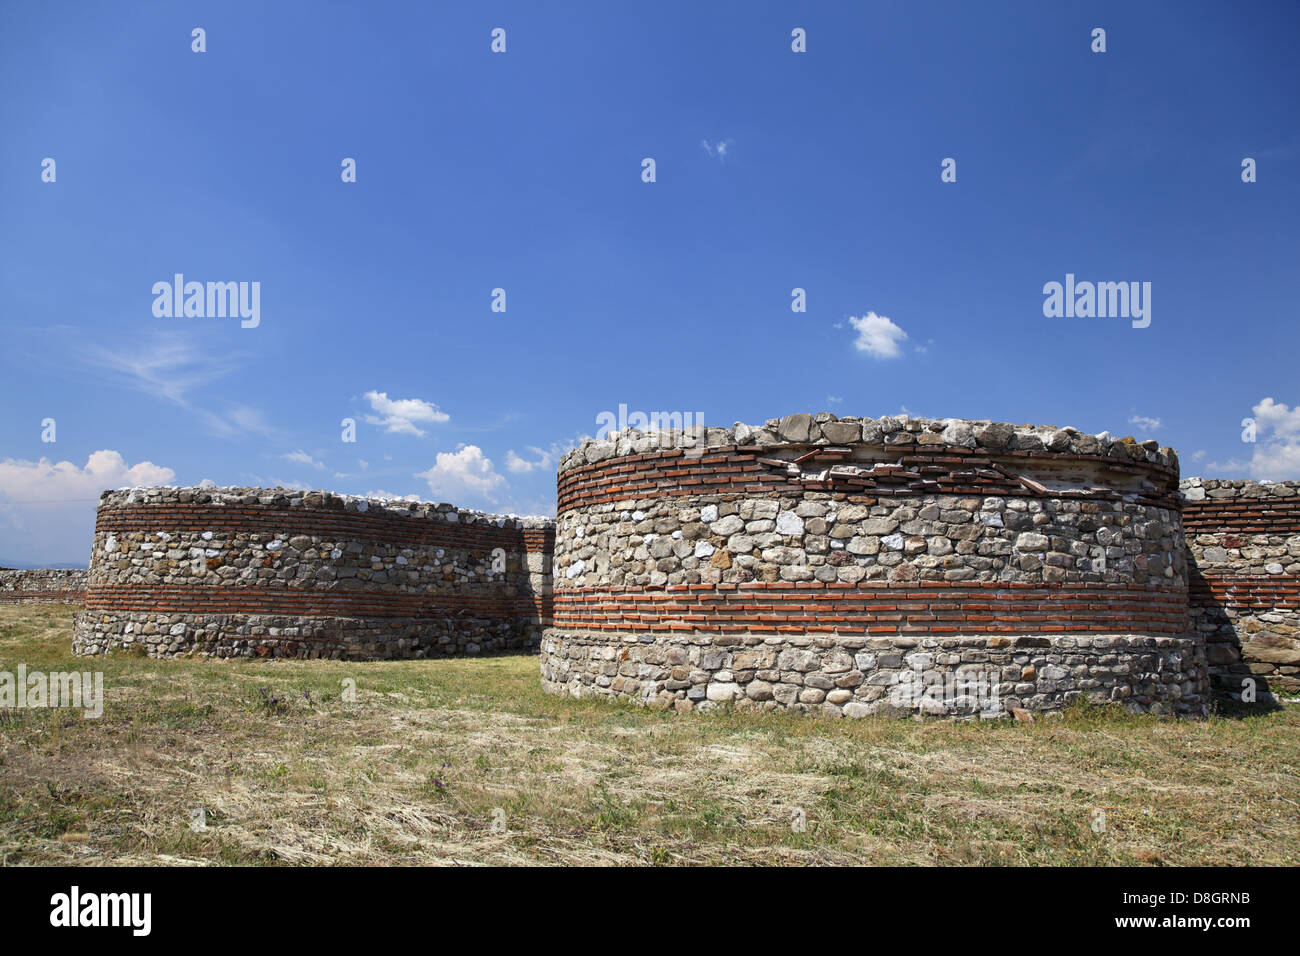 La Serbia, vicino Kladovo; Diana (Romano e inizio fortezza bizantina) fortezza romana Diana, Traiano road, Serbien, nahe Kladovo; Diana Foto Stock